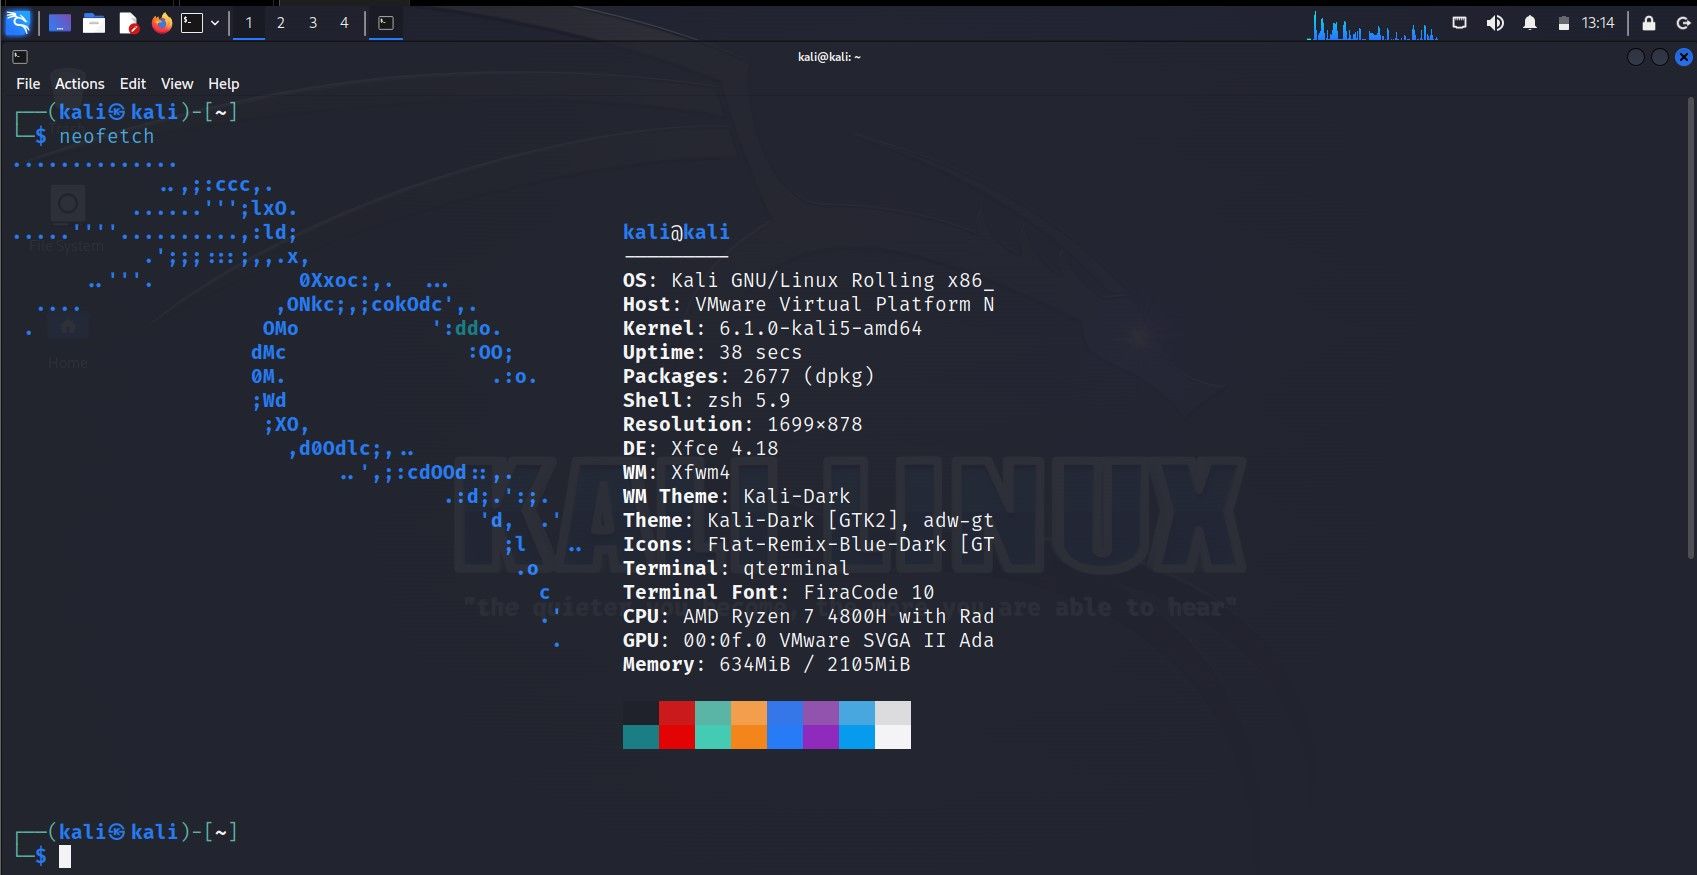 Bureau Kali Linux